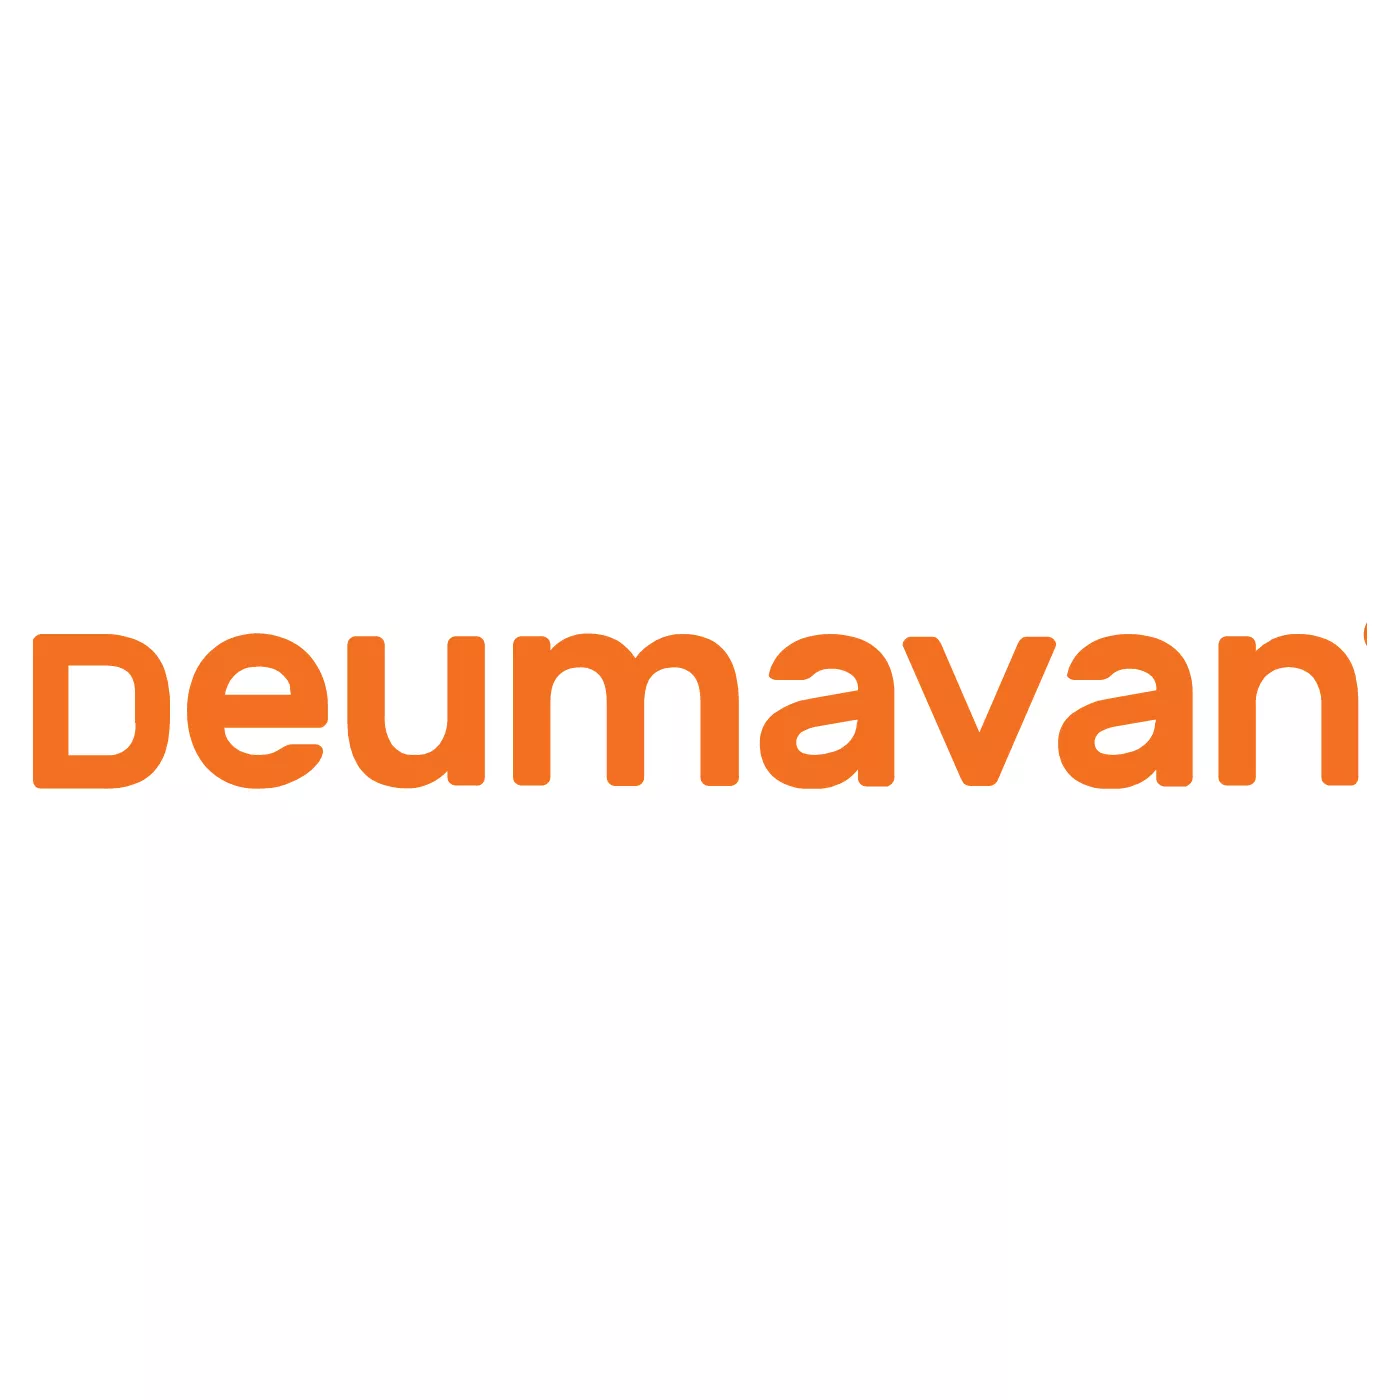 Deumavan